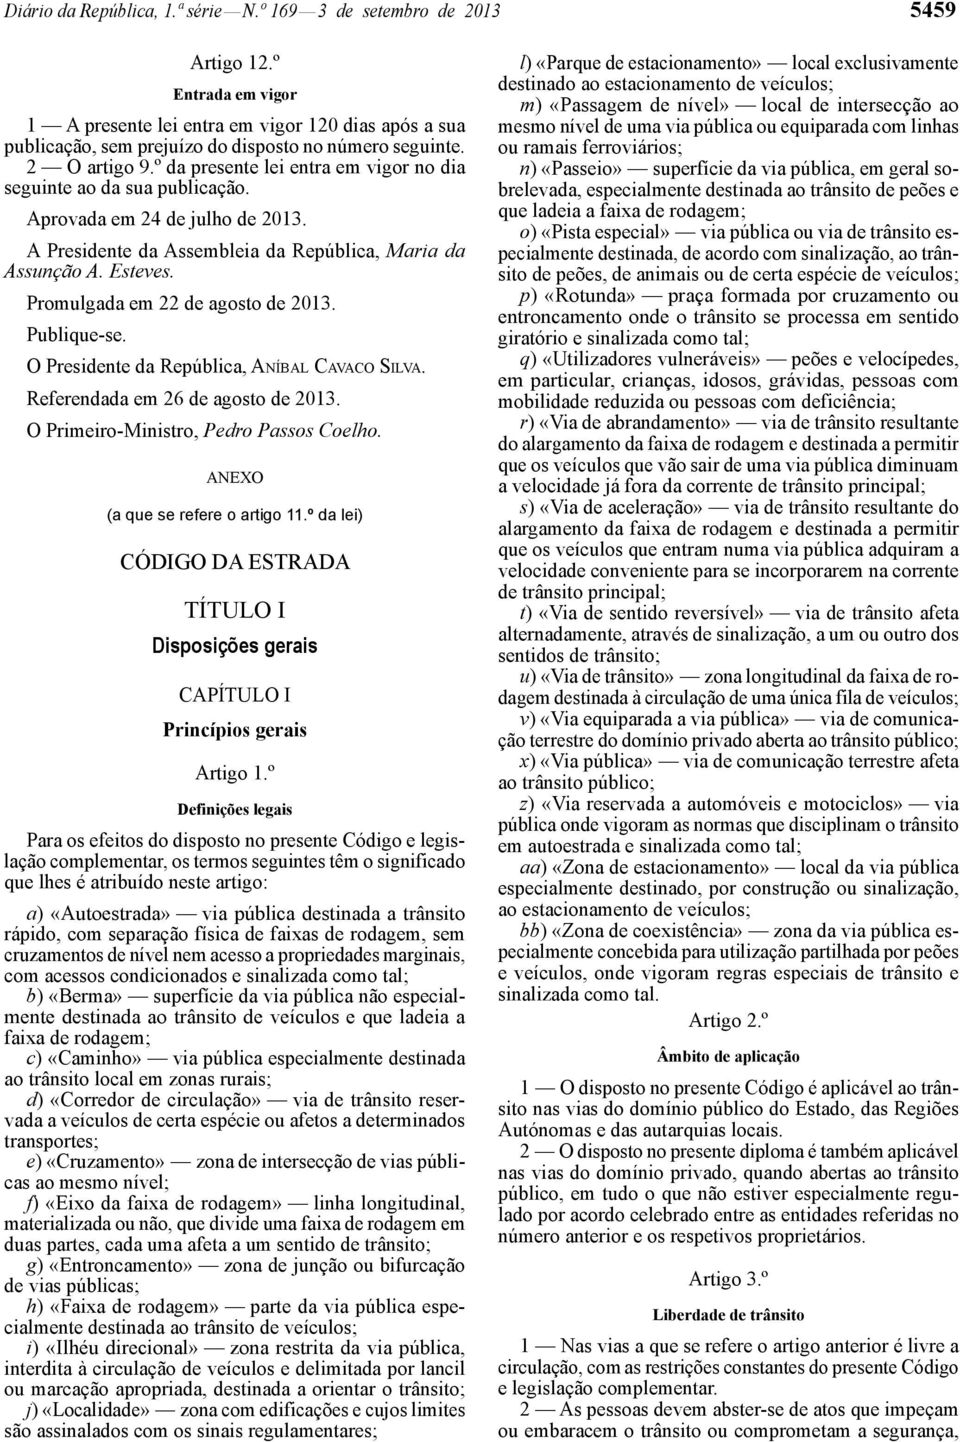 º da presente lei entra em vigor no dia seguinte ao da sua publicação. Aprovada em 24 de julho de 2013. A Presidente da Assembleia da República, Maria da Assunção A. Esteves.